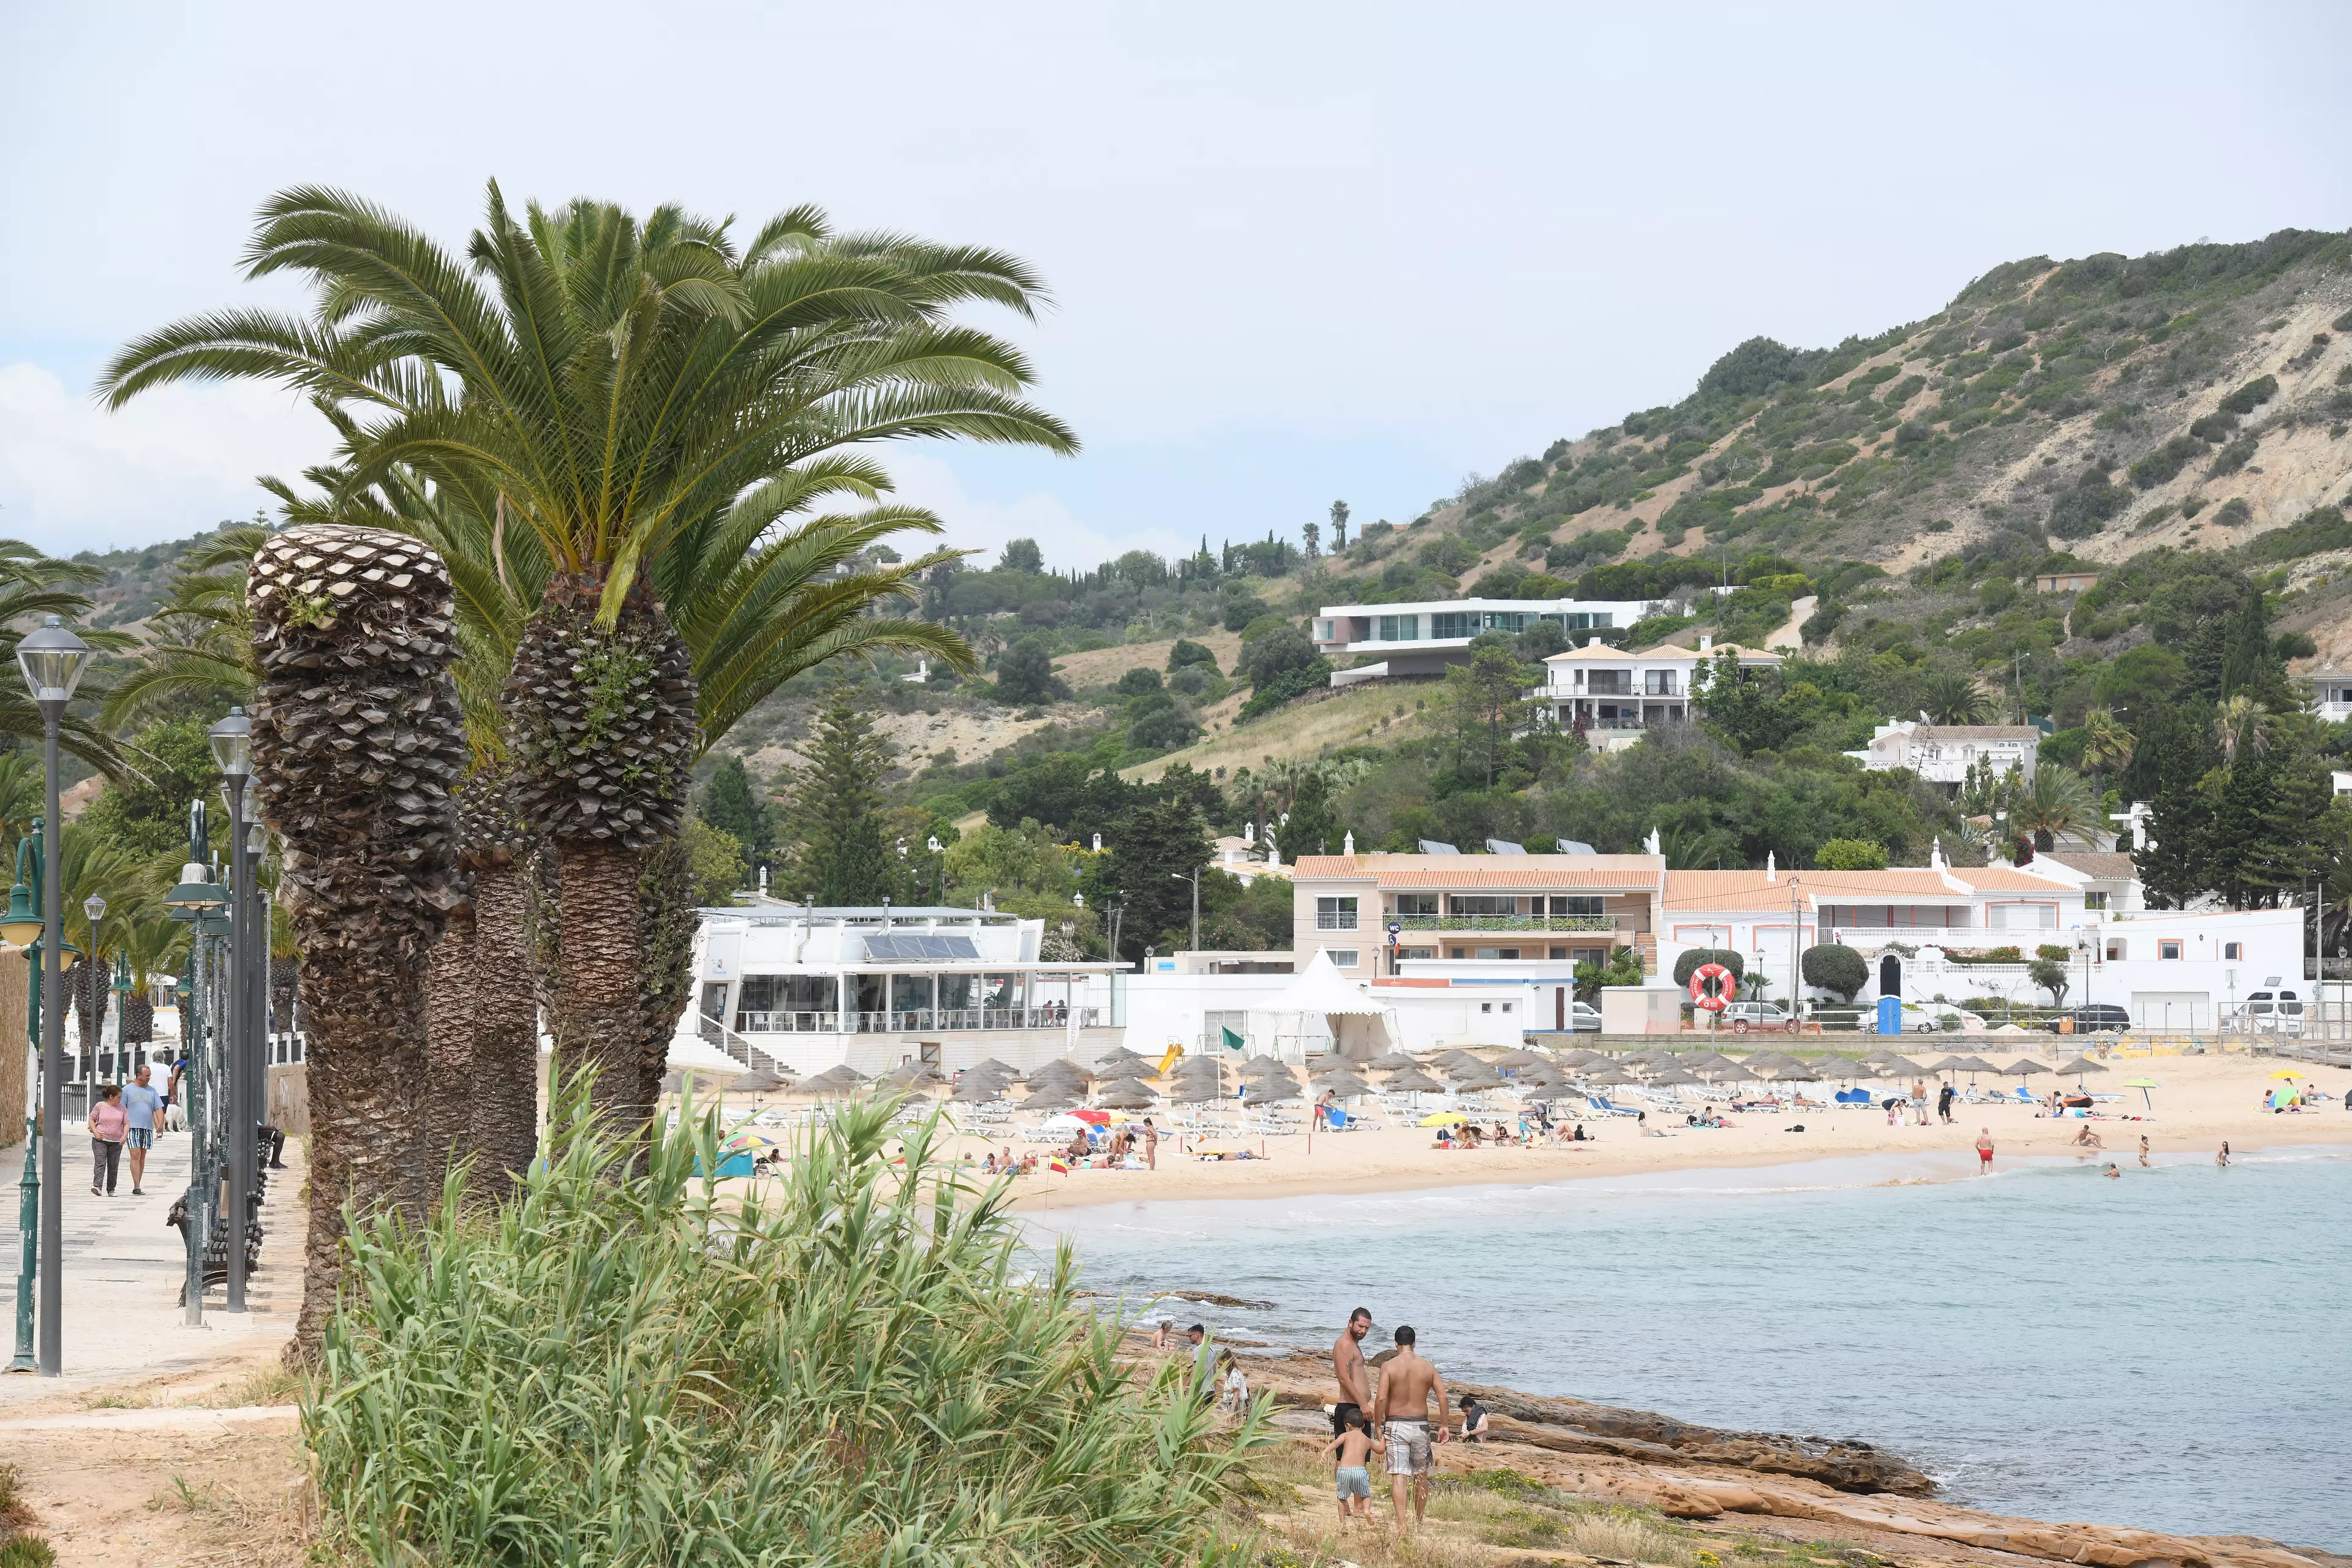 Praia da Luz, where Maddie was abducted.